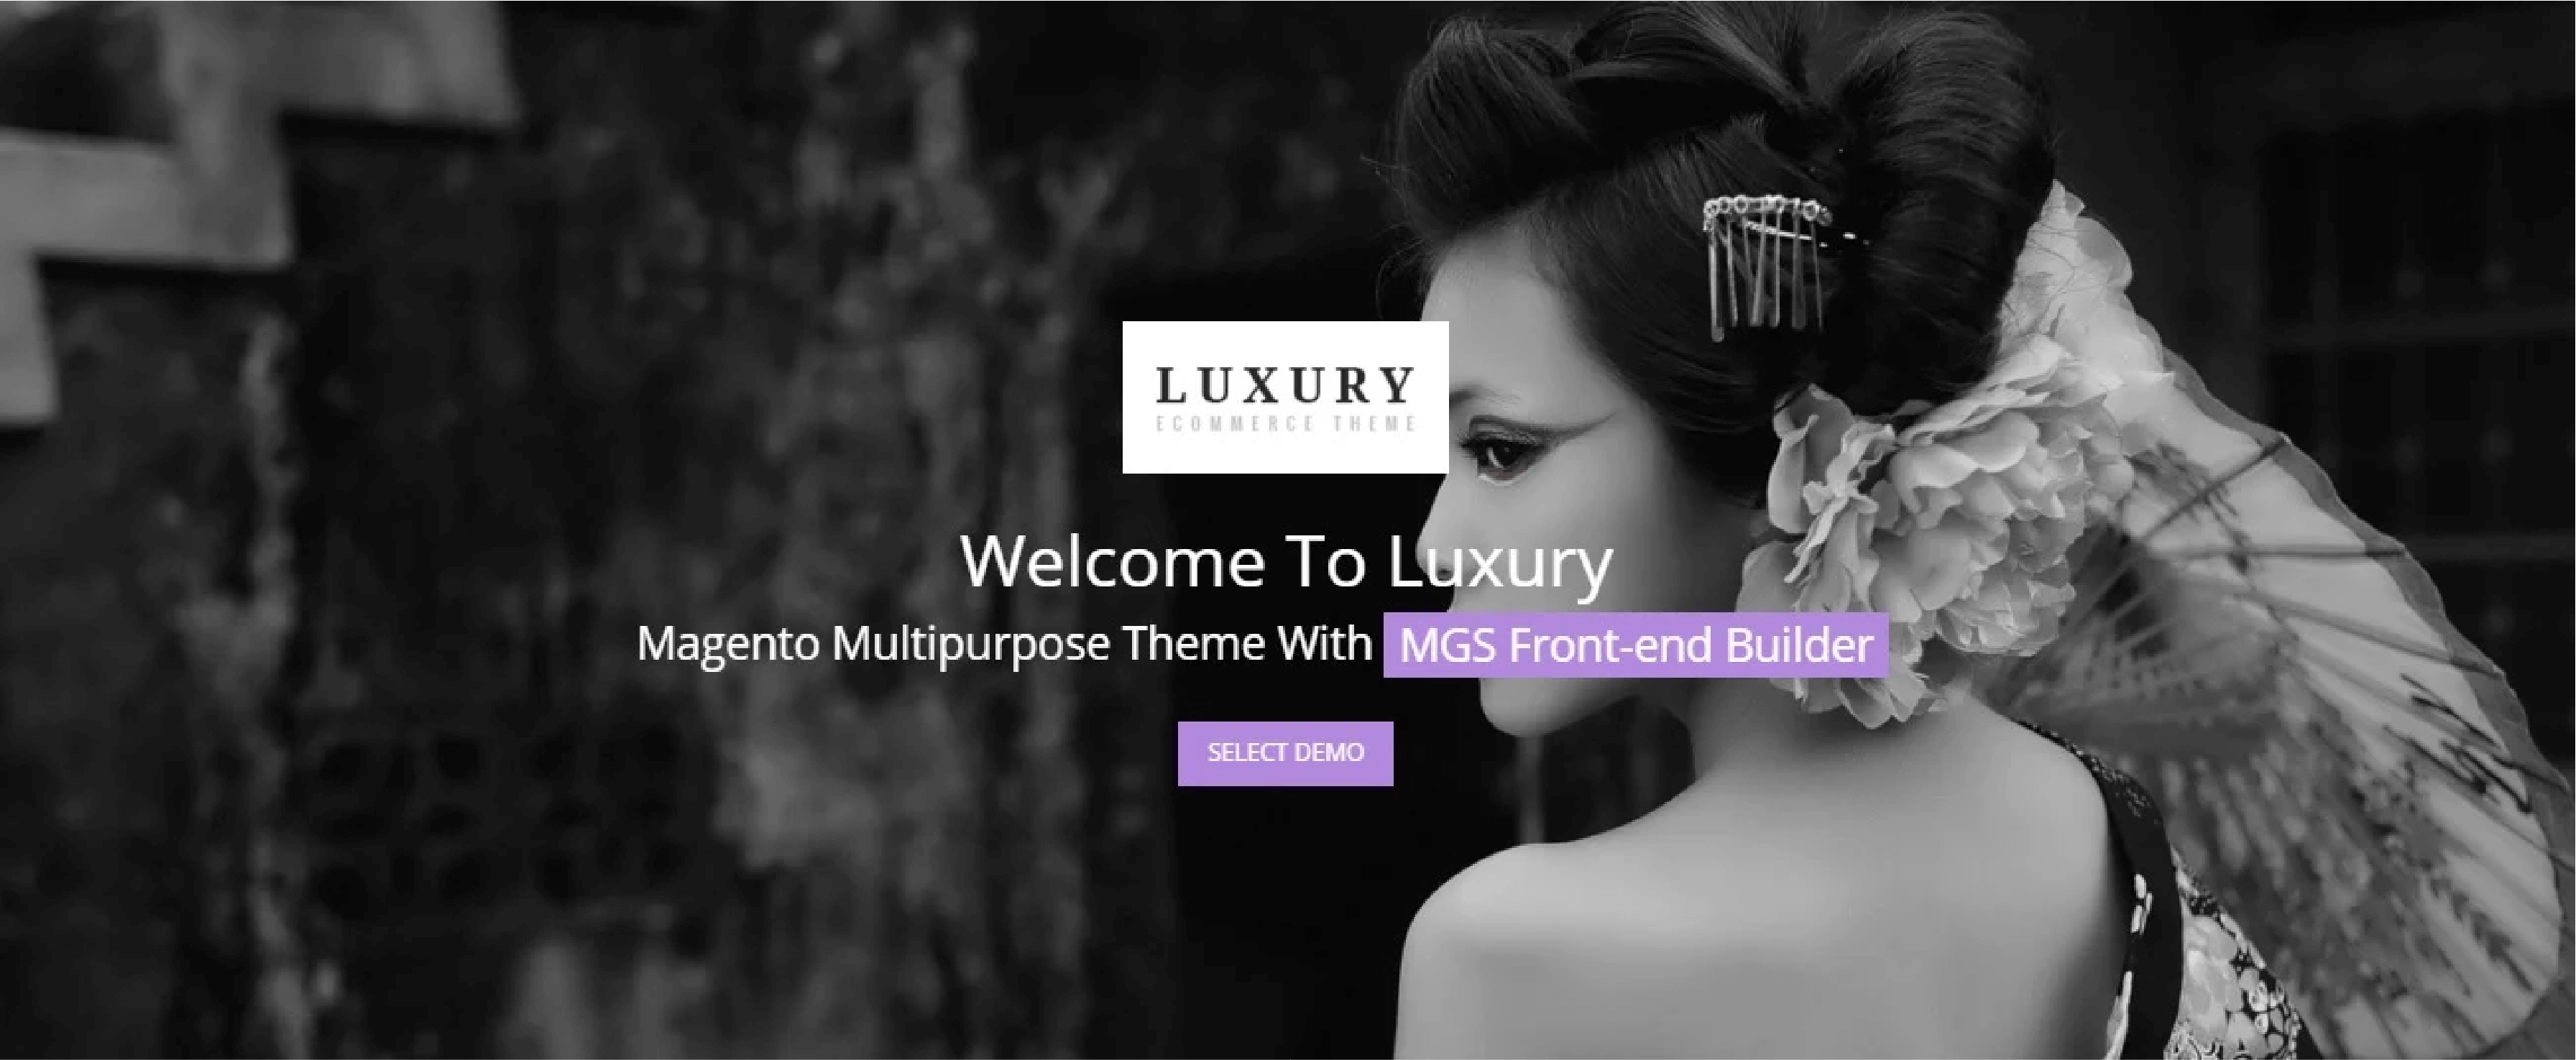 Luxury - Premium Fashion Magento Theme for high-end fashion stores